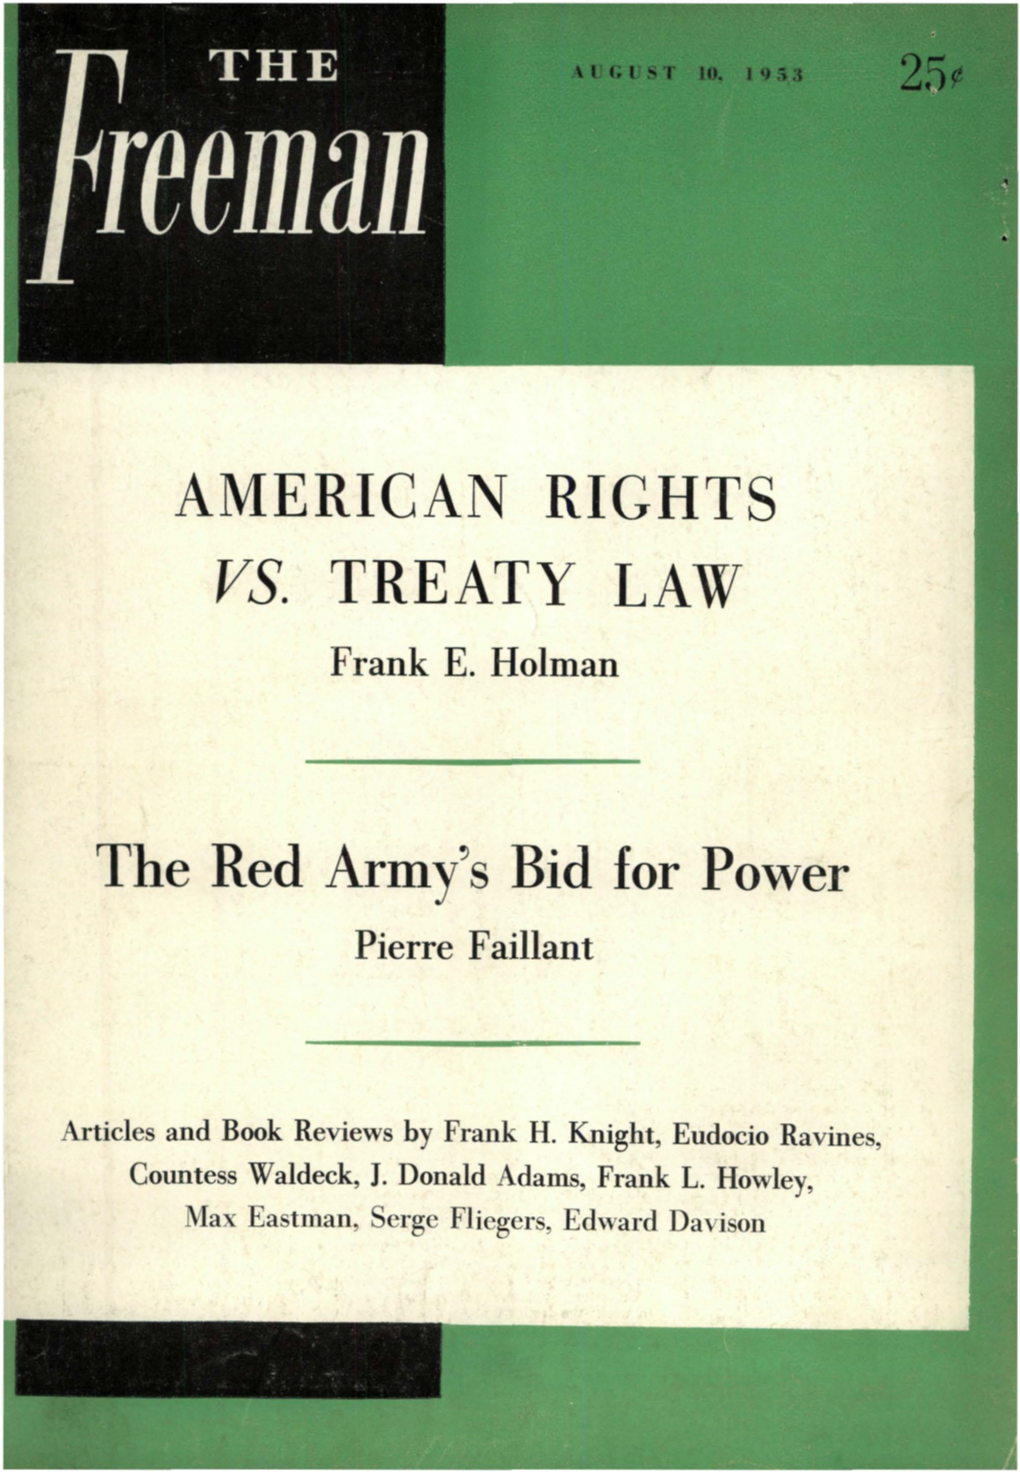 AMERICAN RIGHTS VS. TREATY LAW Frank E